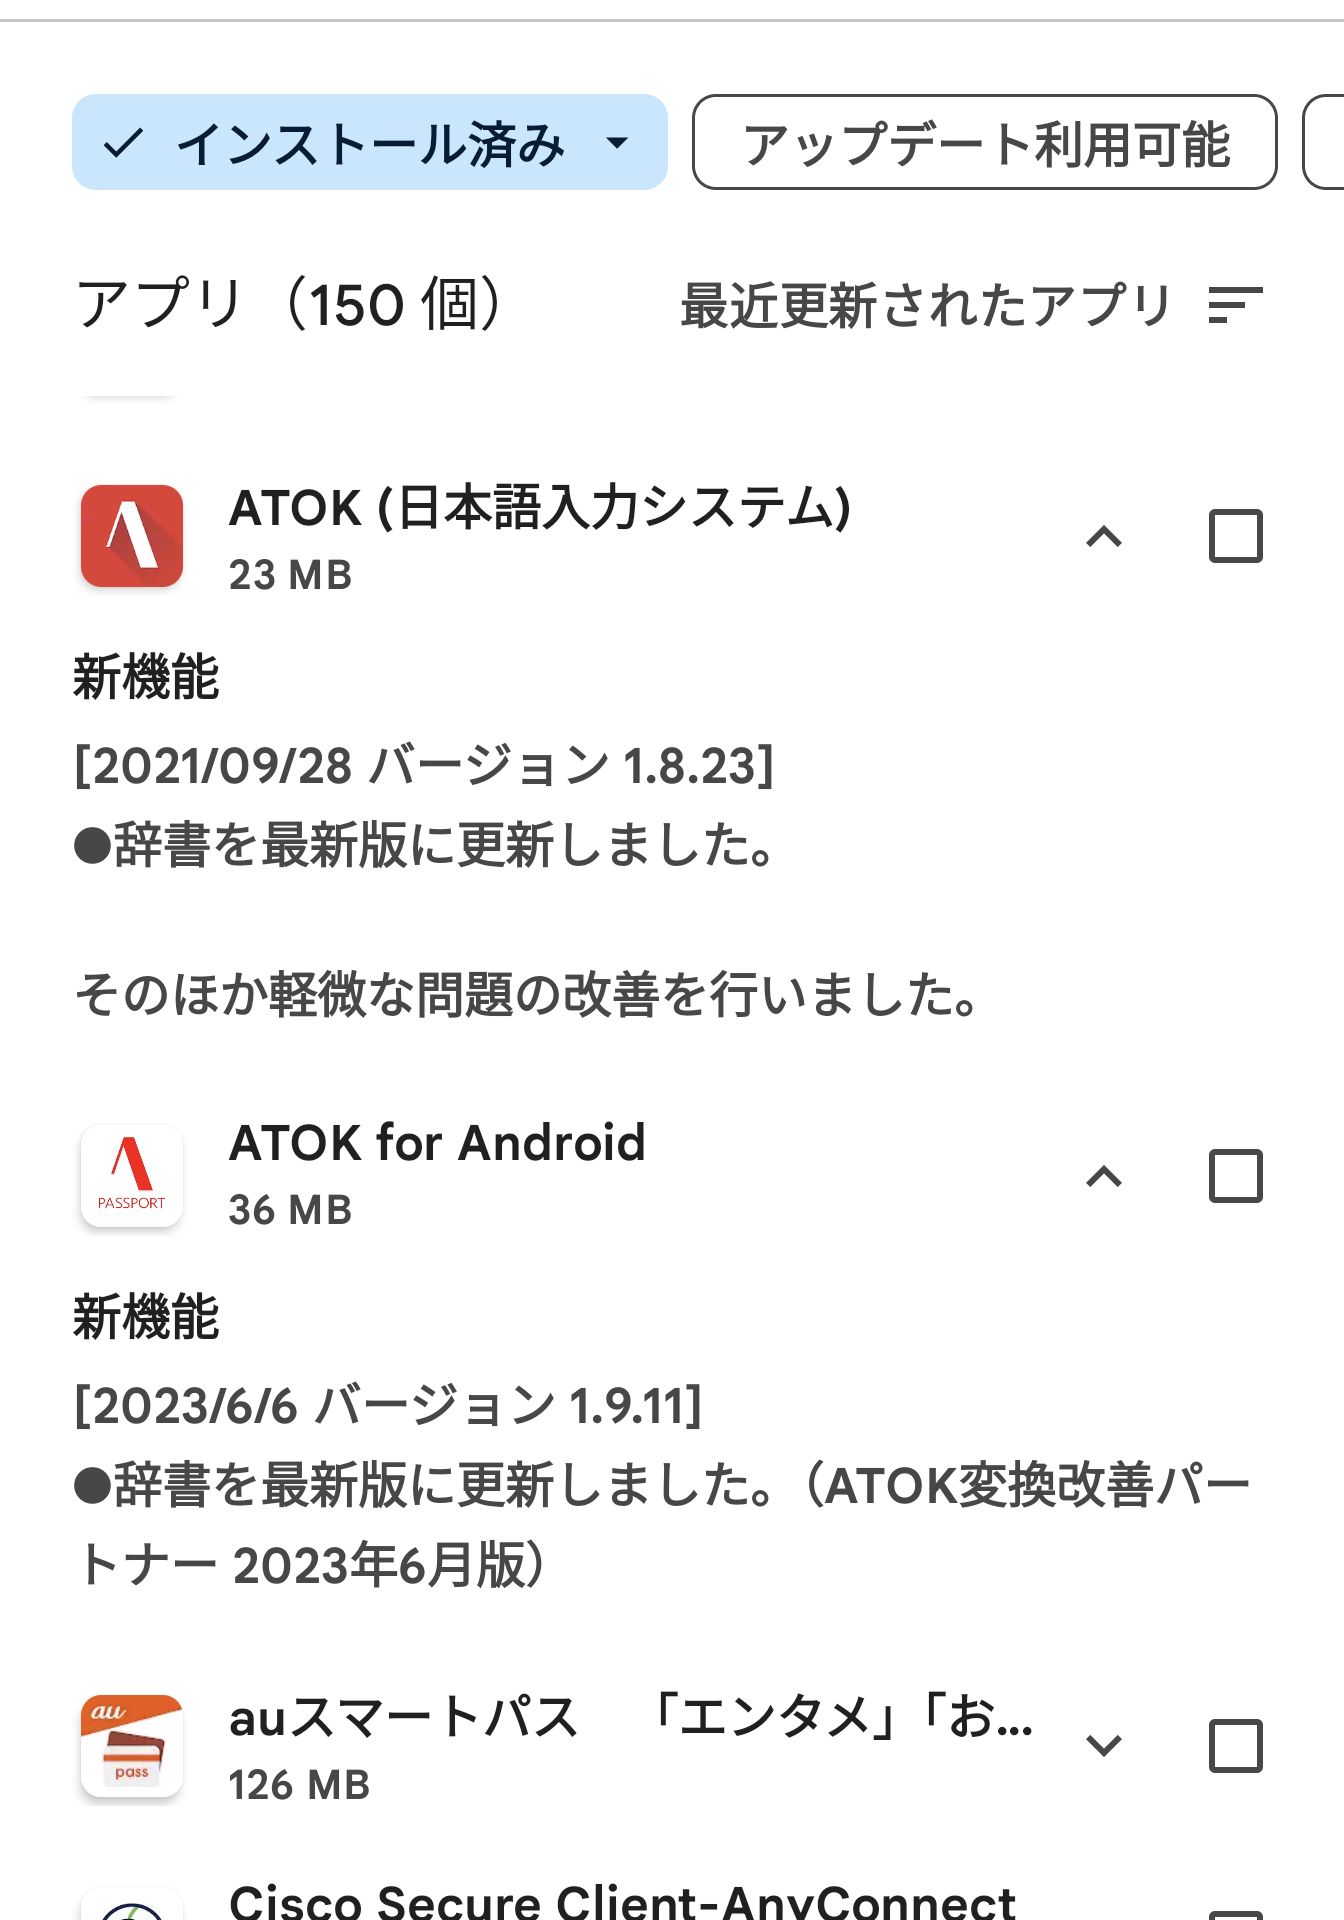 ATOKのアプリ